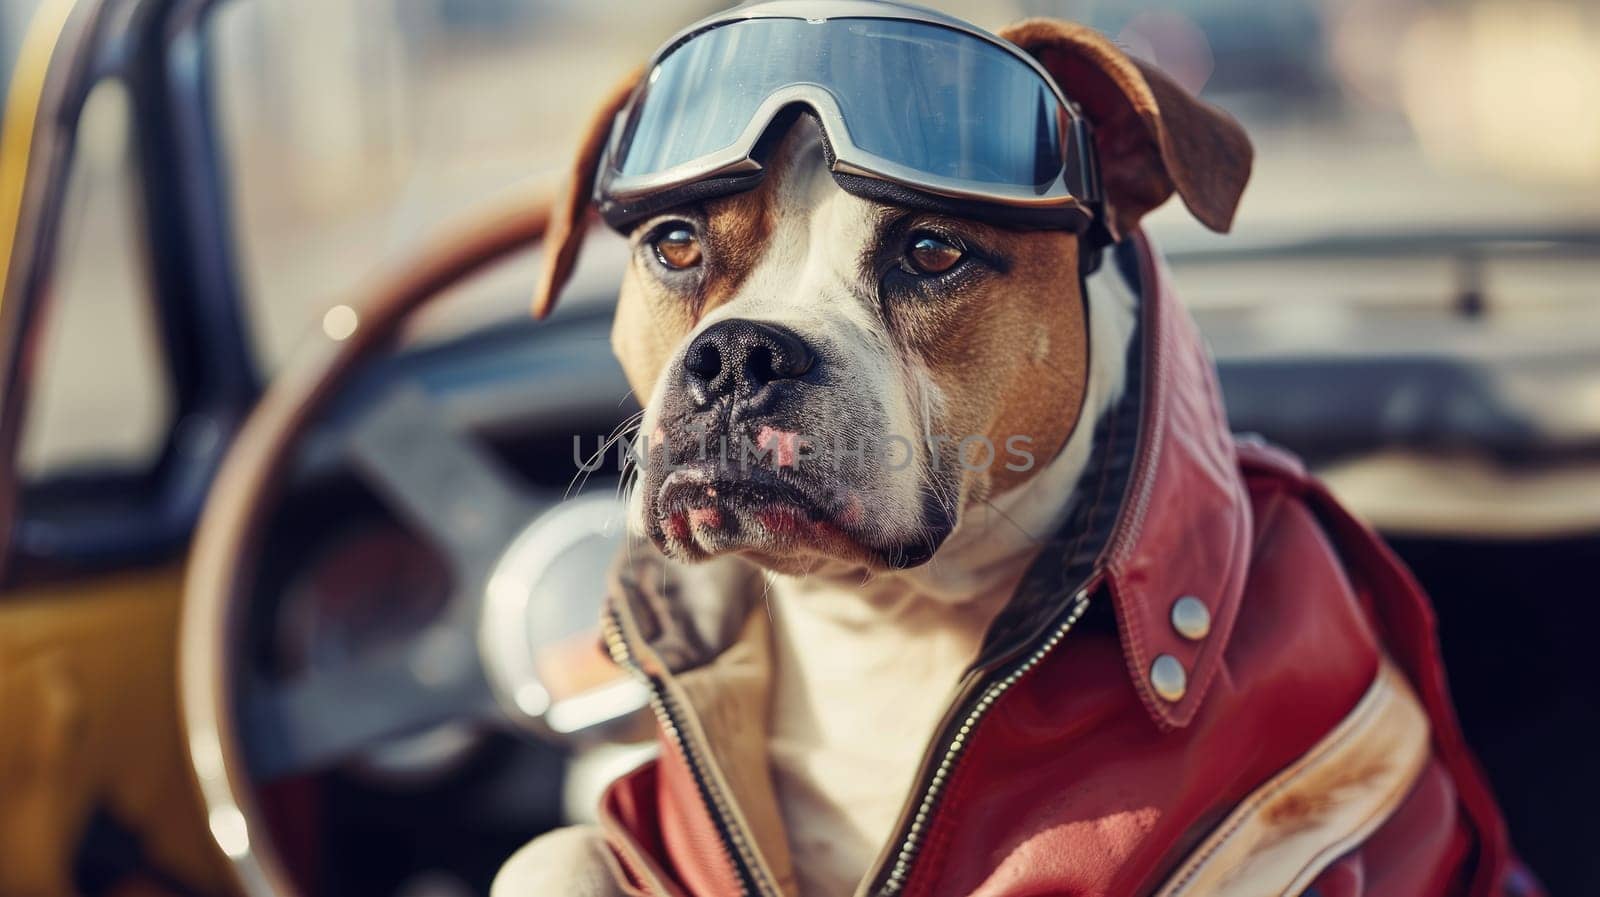 A dog in motor racer suit, Biker dog, Driver dog.